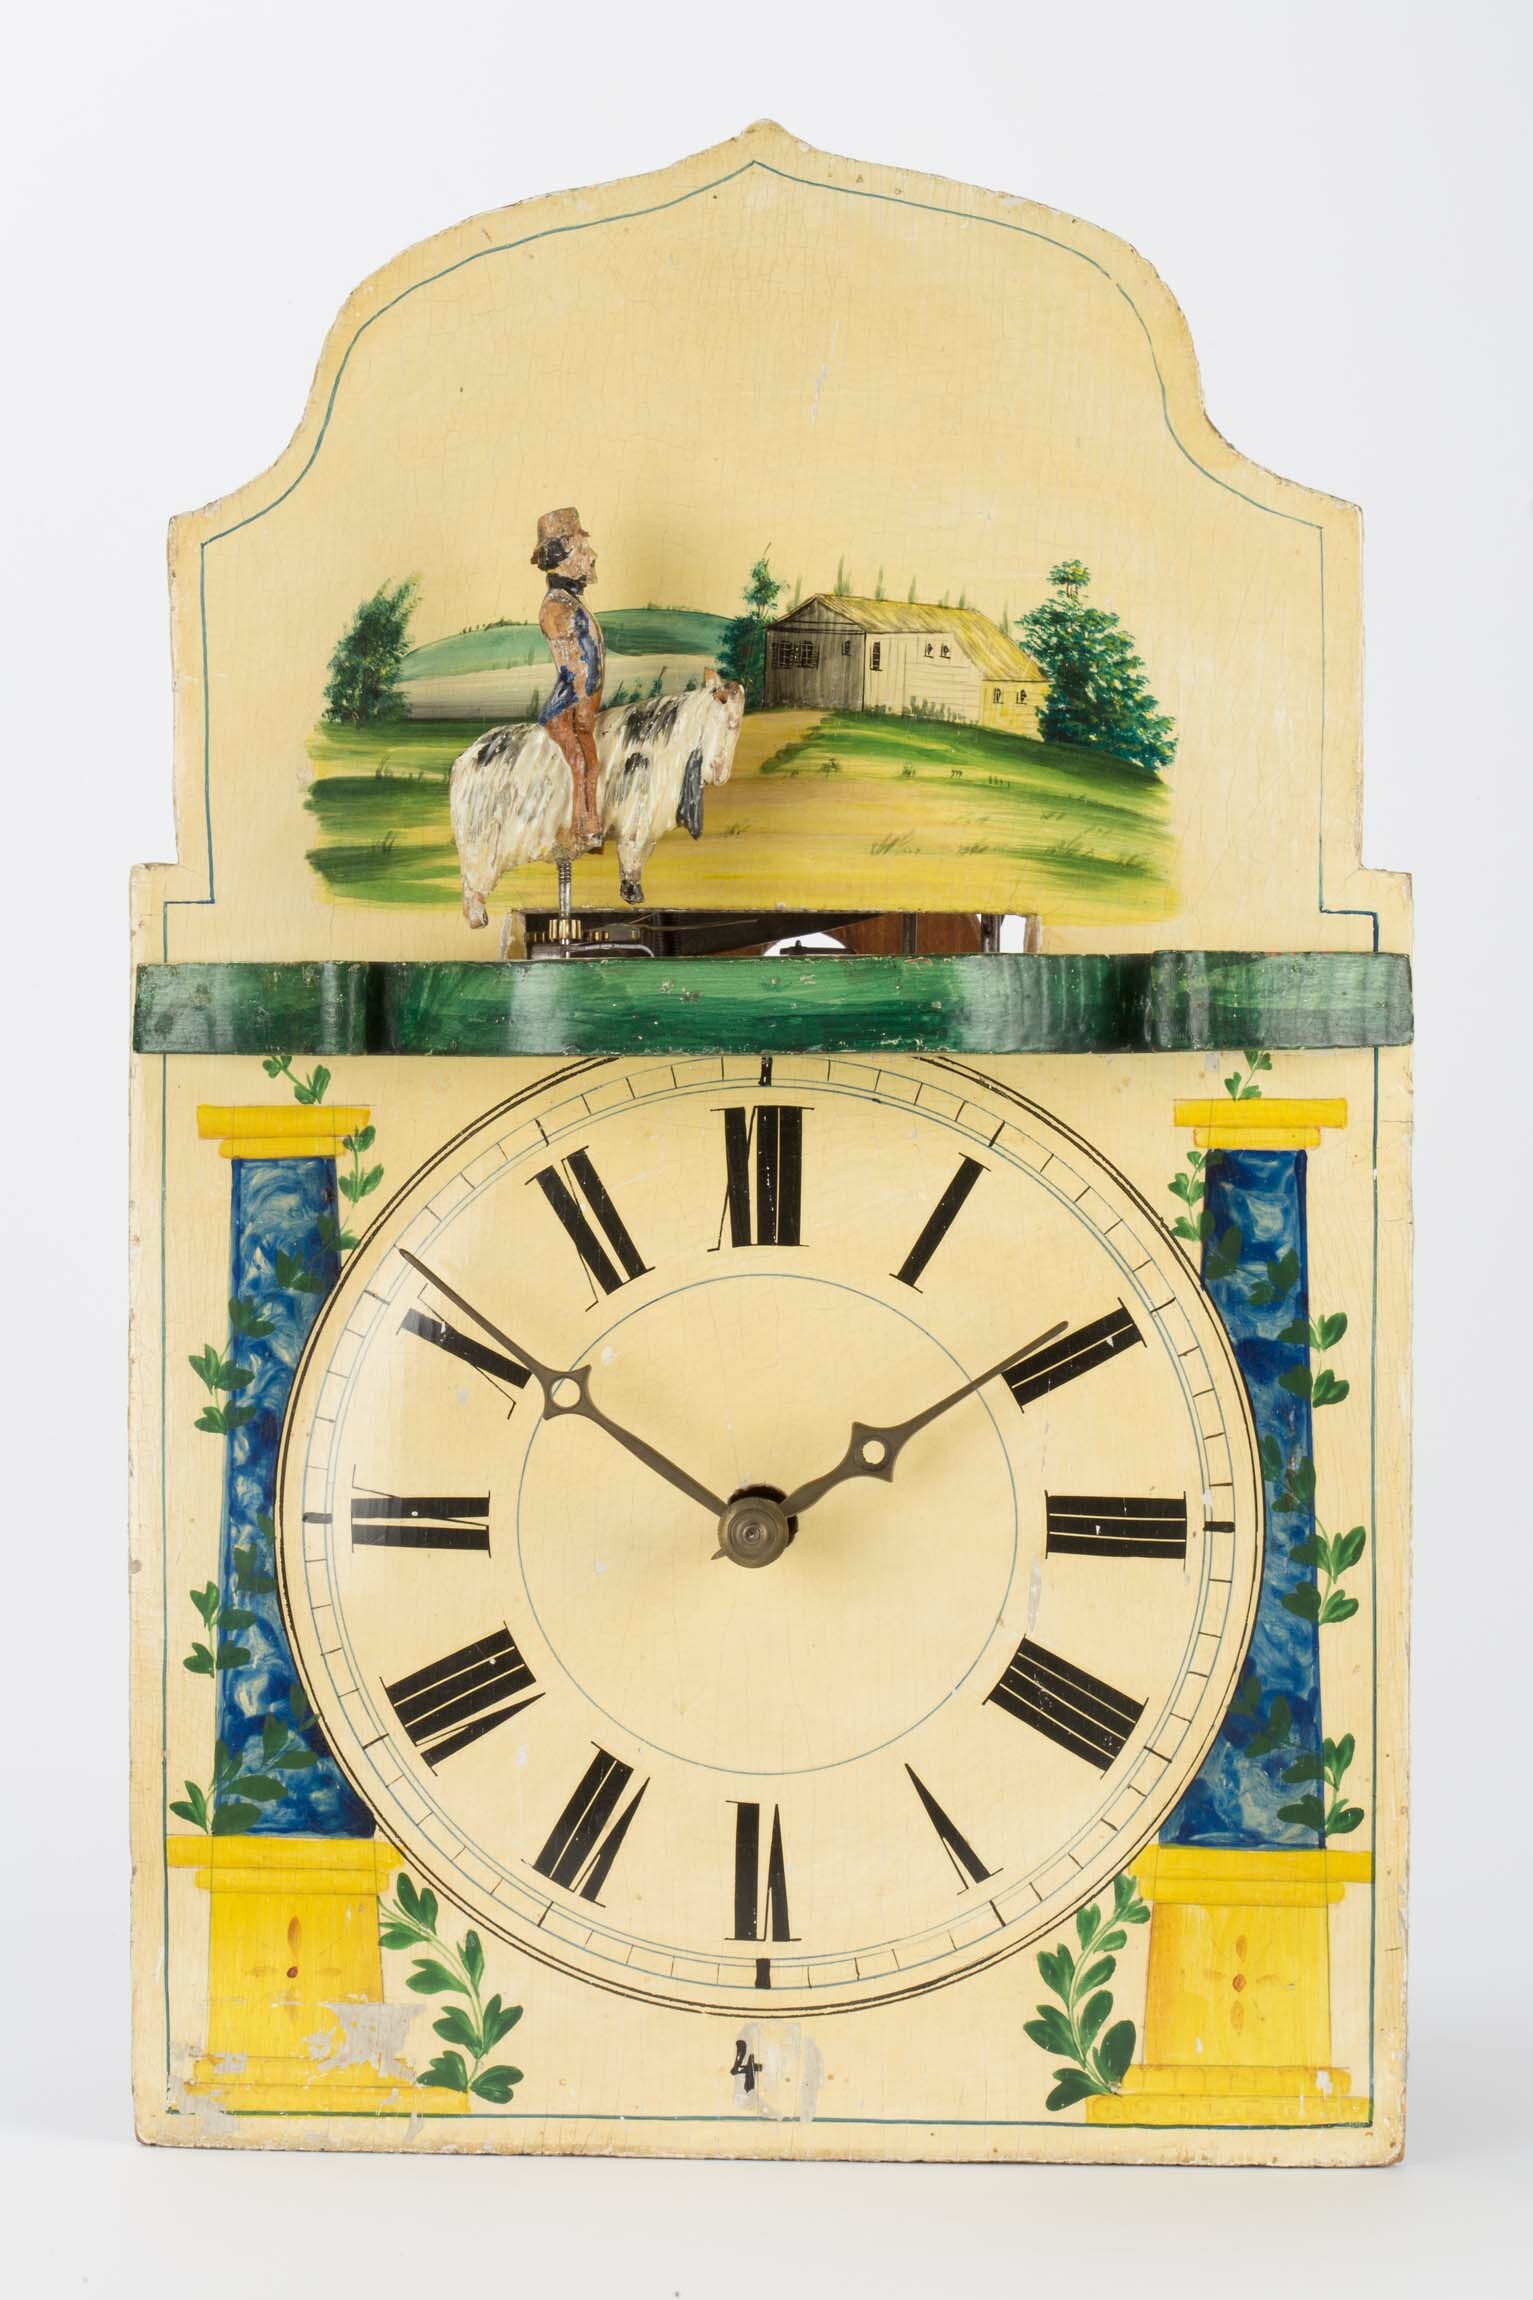 Lackschilduhr mit Schneider auf dem Ziegenbock, Jacob Bäuerle, Furtwangen um 1860 (Deutsches Uhrenmuseum CC BY-SA)